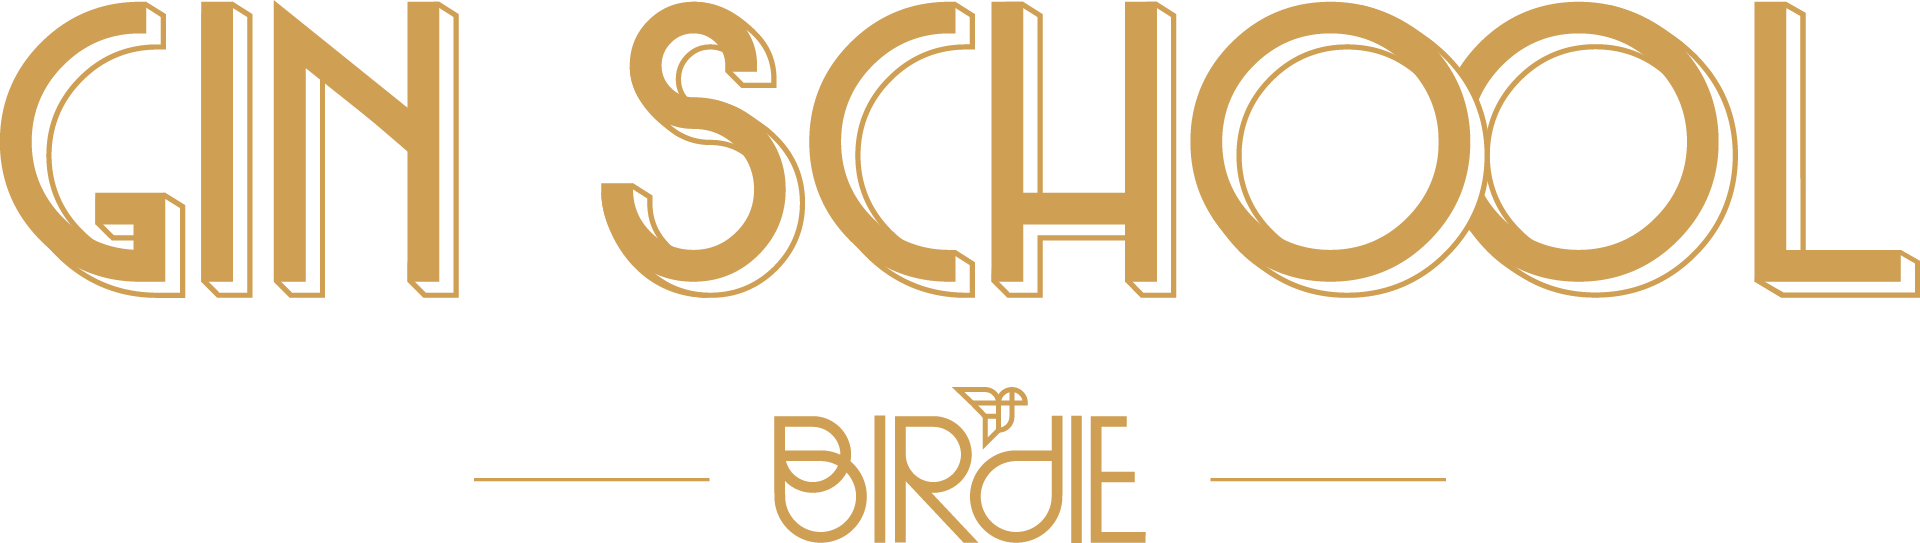 Gin School par Birdie Logo